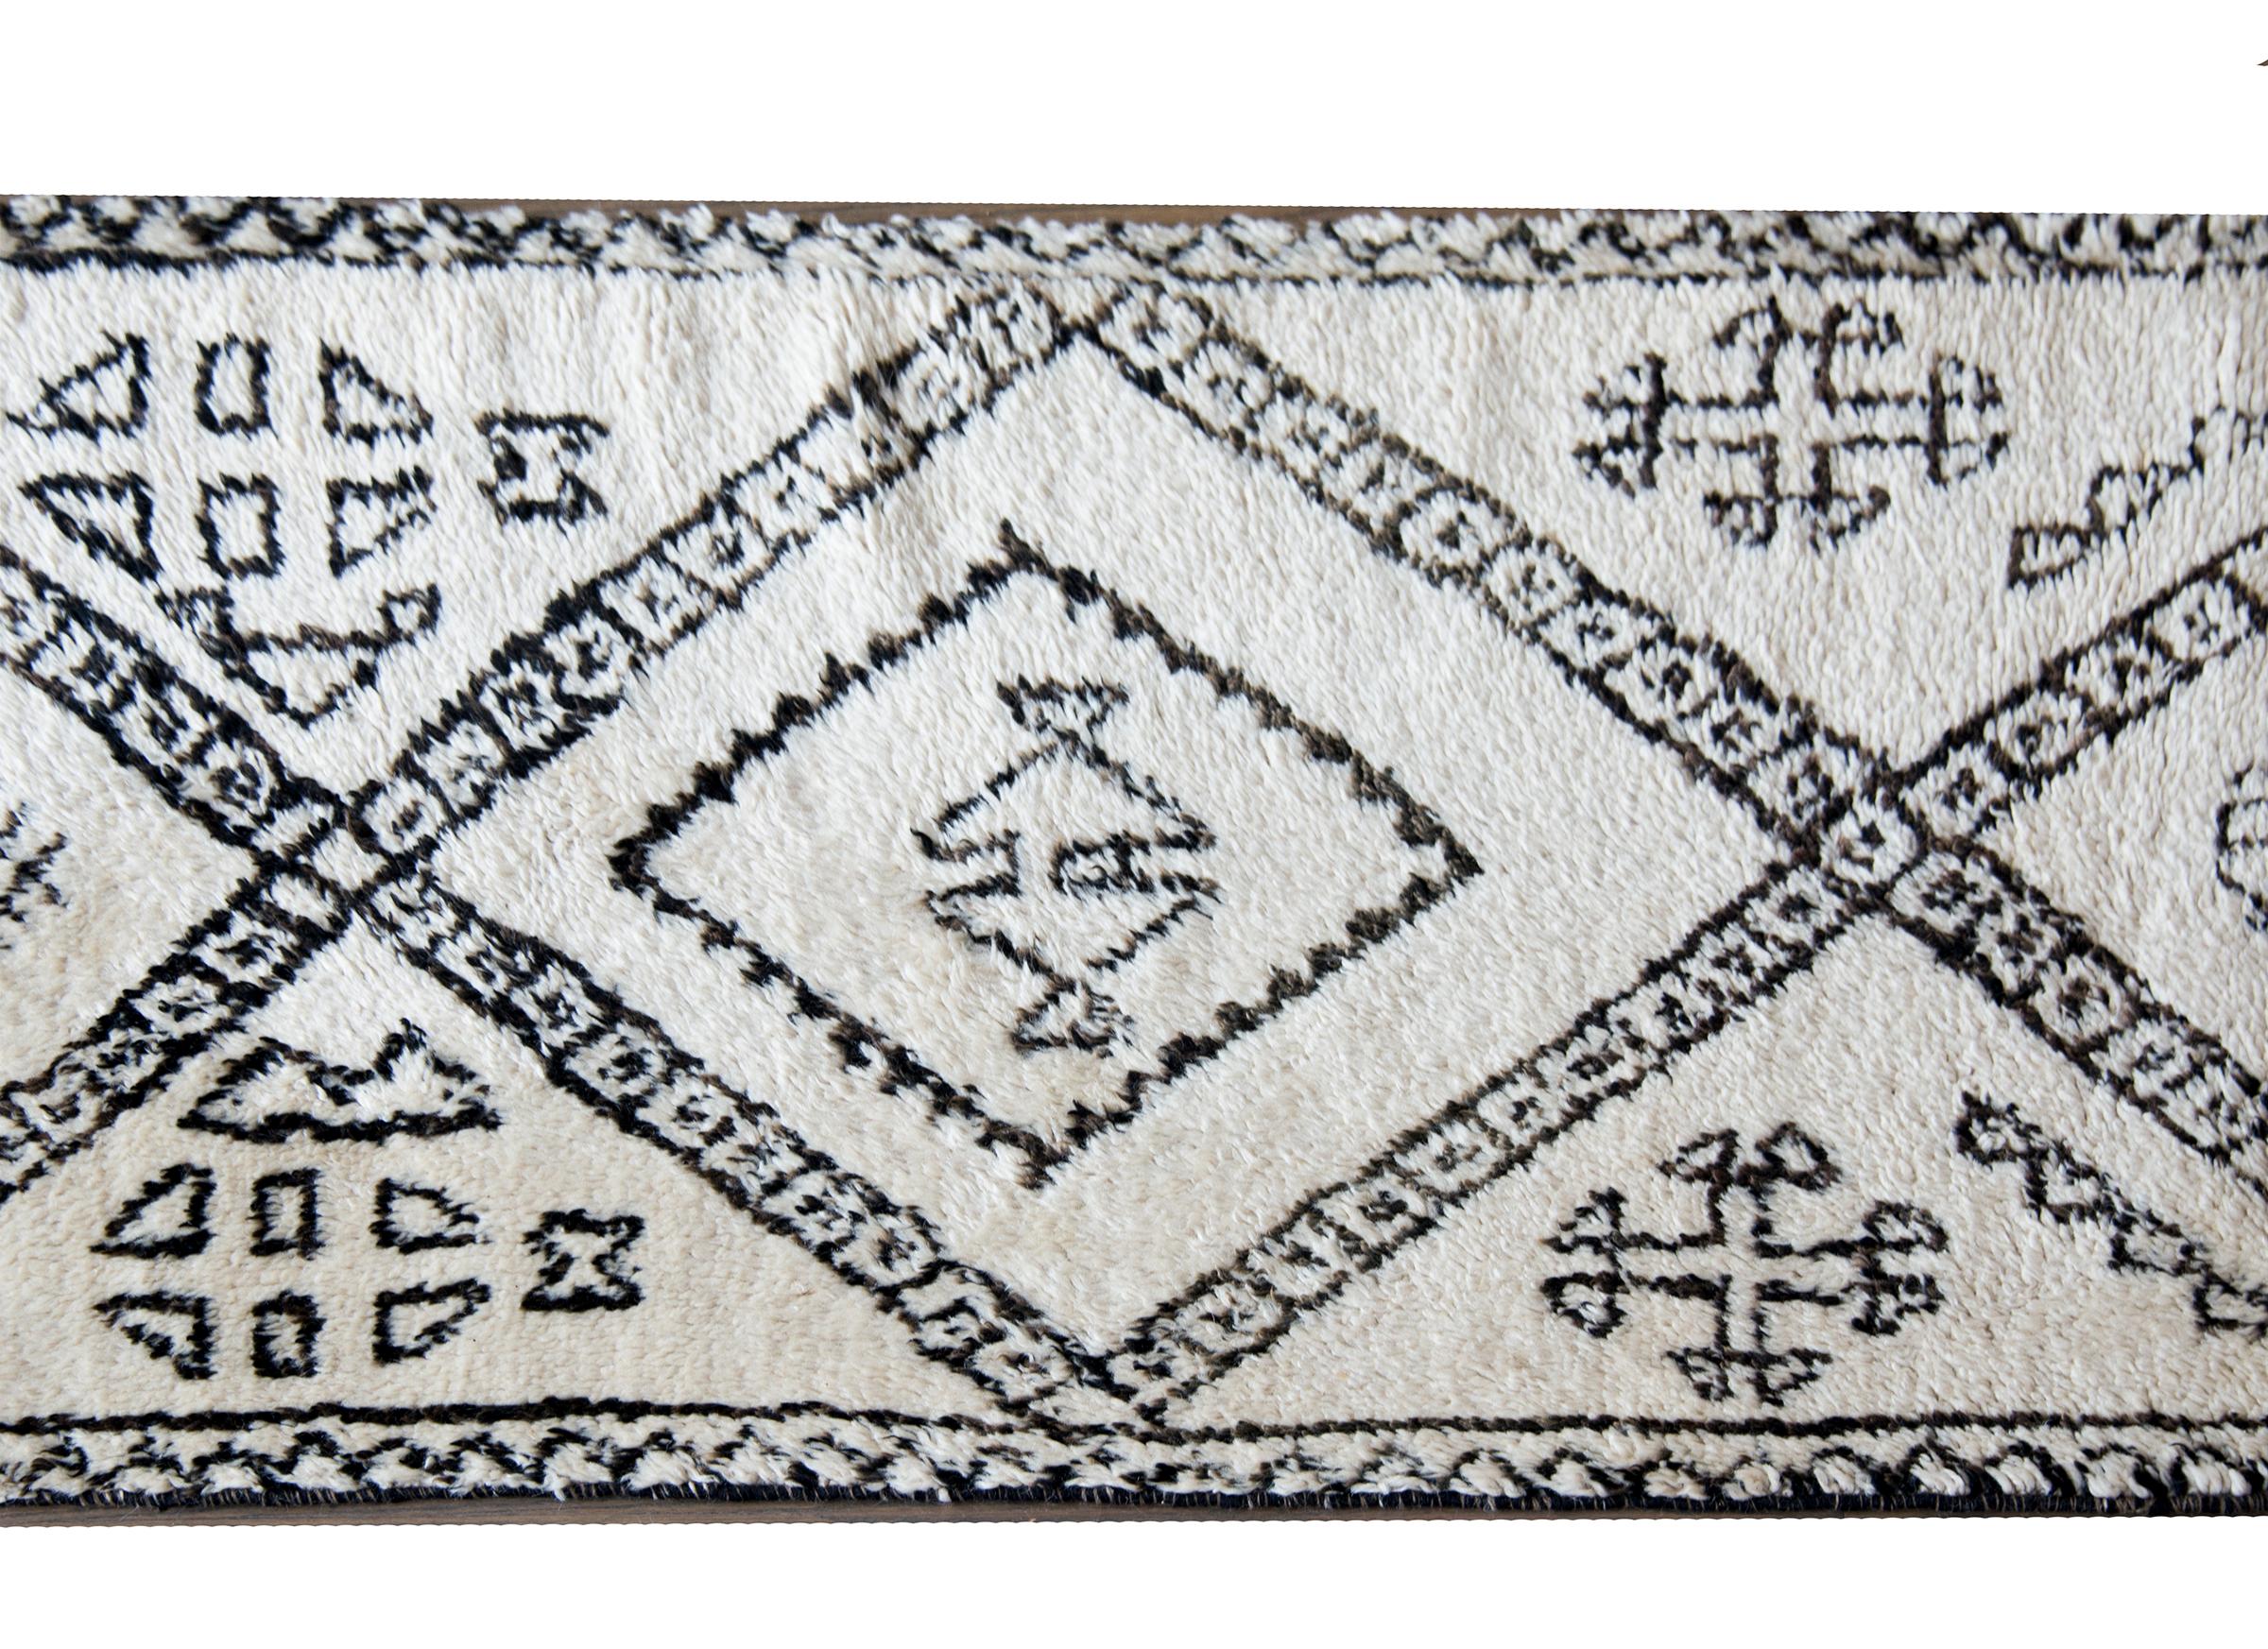 Magnifique tapis marocain du milieu du 20e siècle, tissé en laine blanche et brune, avec un motif moderne audacieux contenant de grands zigzags avec des motifs floraux stylisés mélangés.